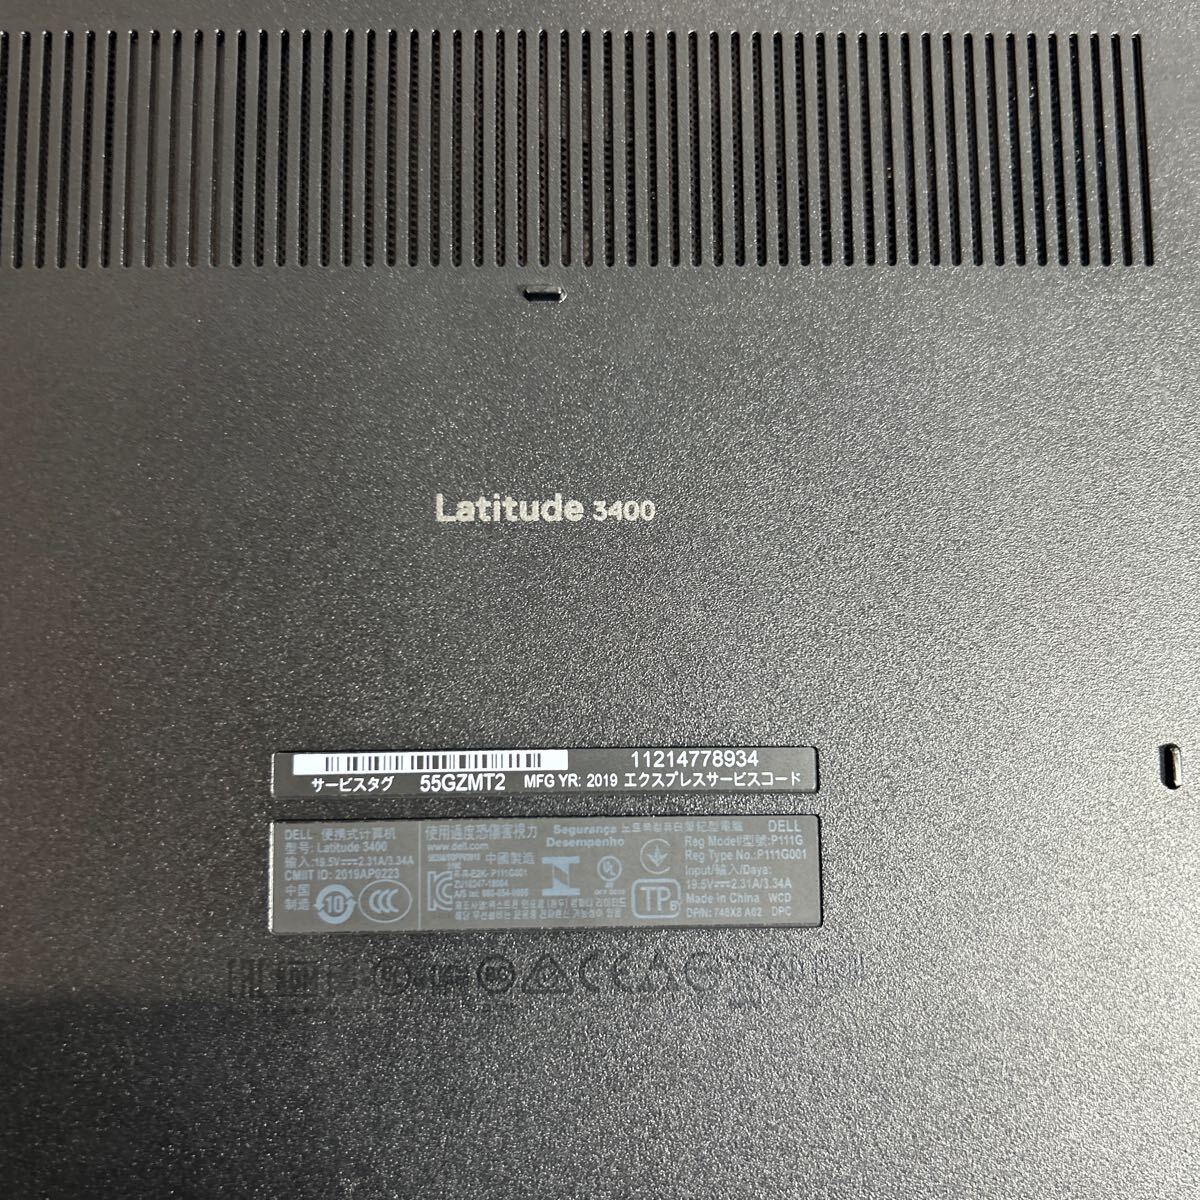 【ジャンク品】DELL デル ノートパソコン latitude3400 Intel Corei3初期化未実行 動作通電未確認 本体のみ 電源コードなし (8)の画像4